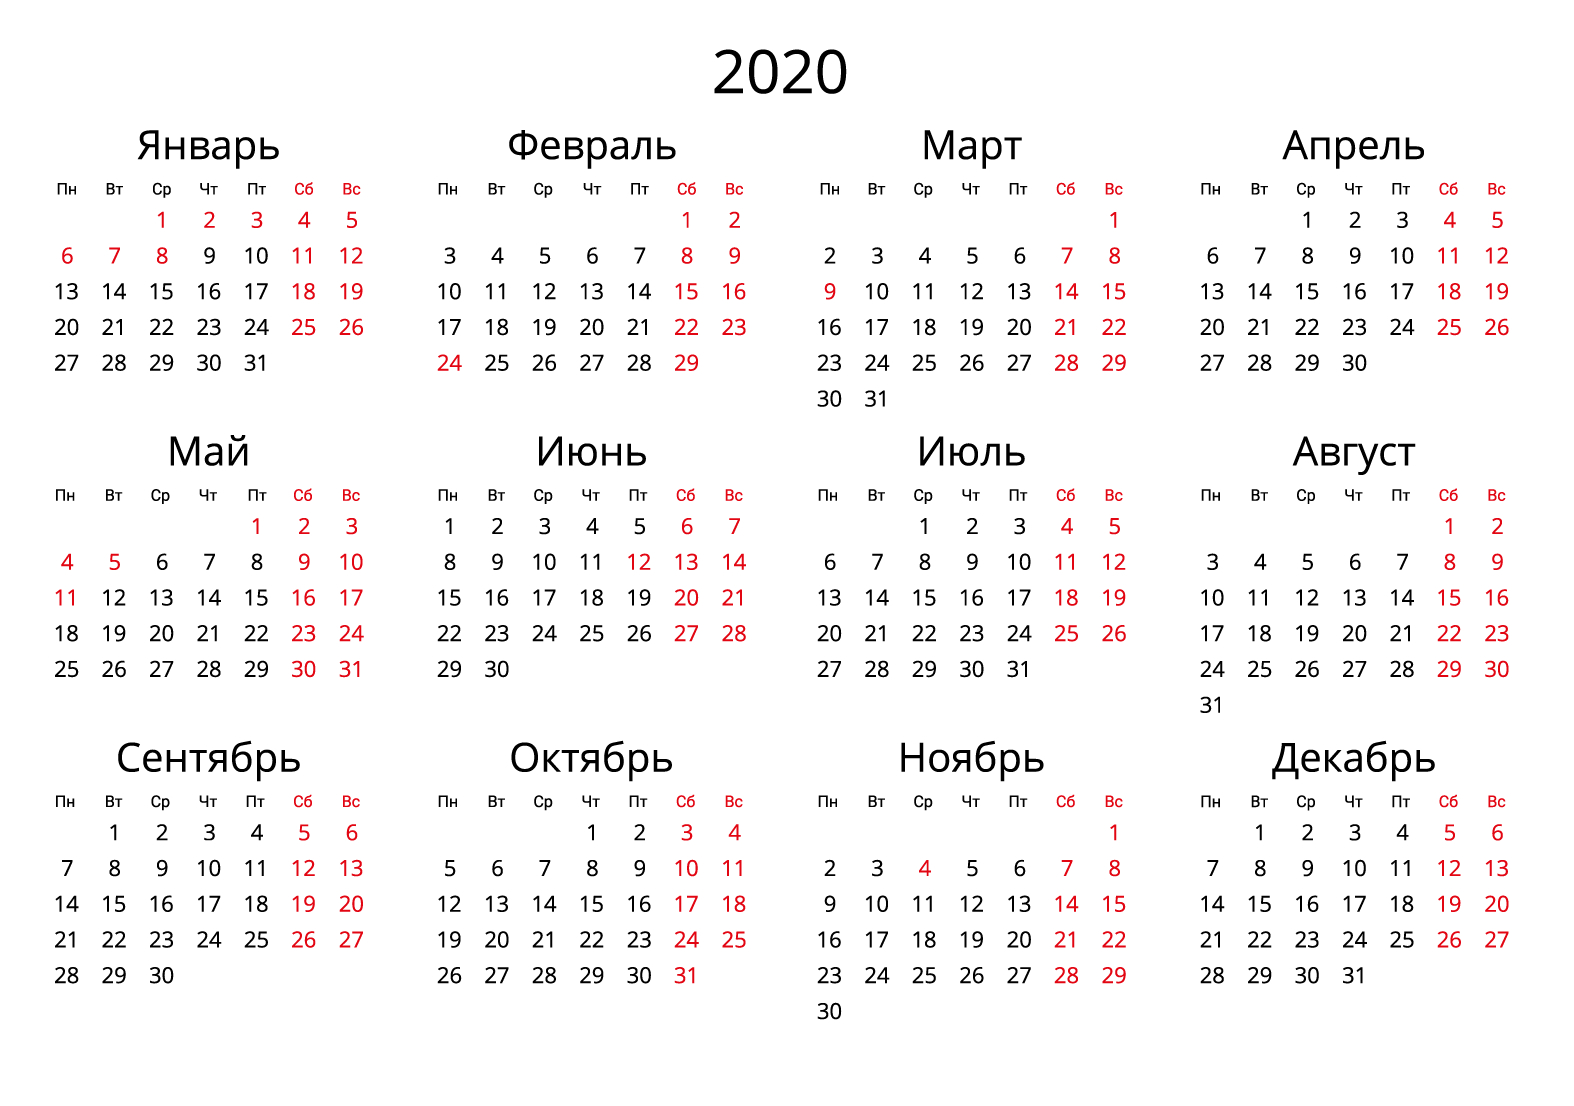 Скачать Календарь На 2020 Год В Форматах: Word, Pdf, Jpg throughout Kalendar Kuda May 2020